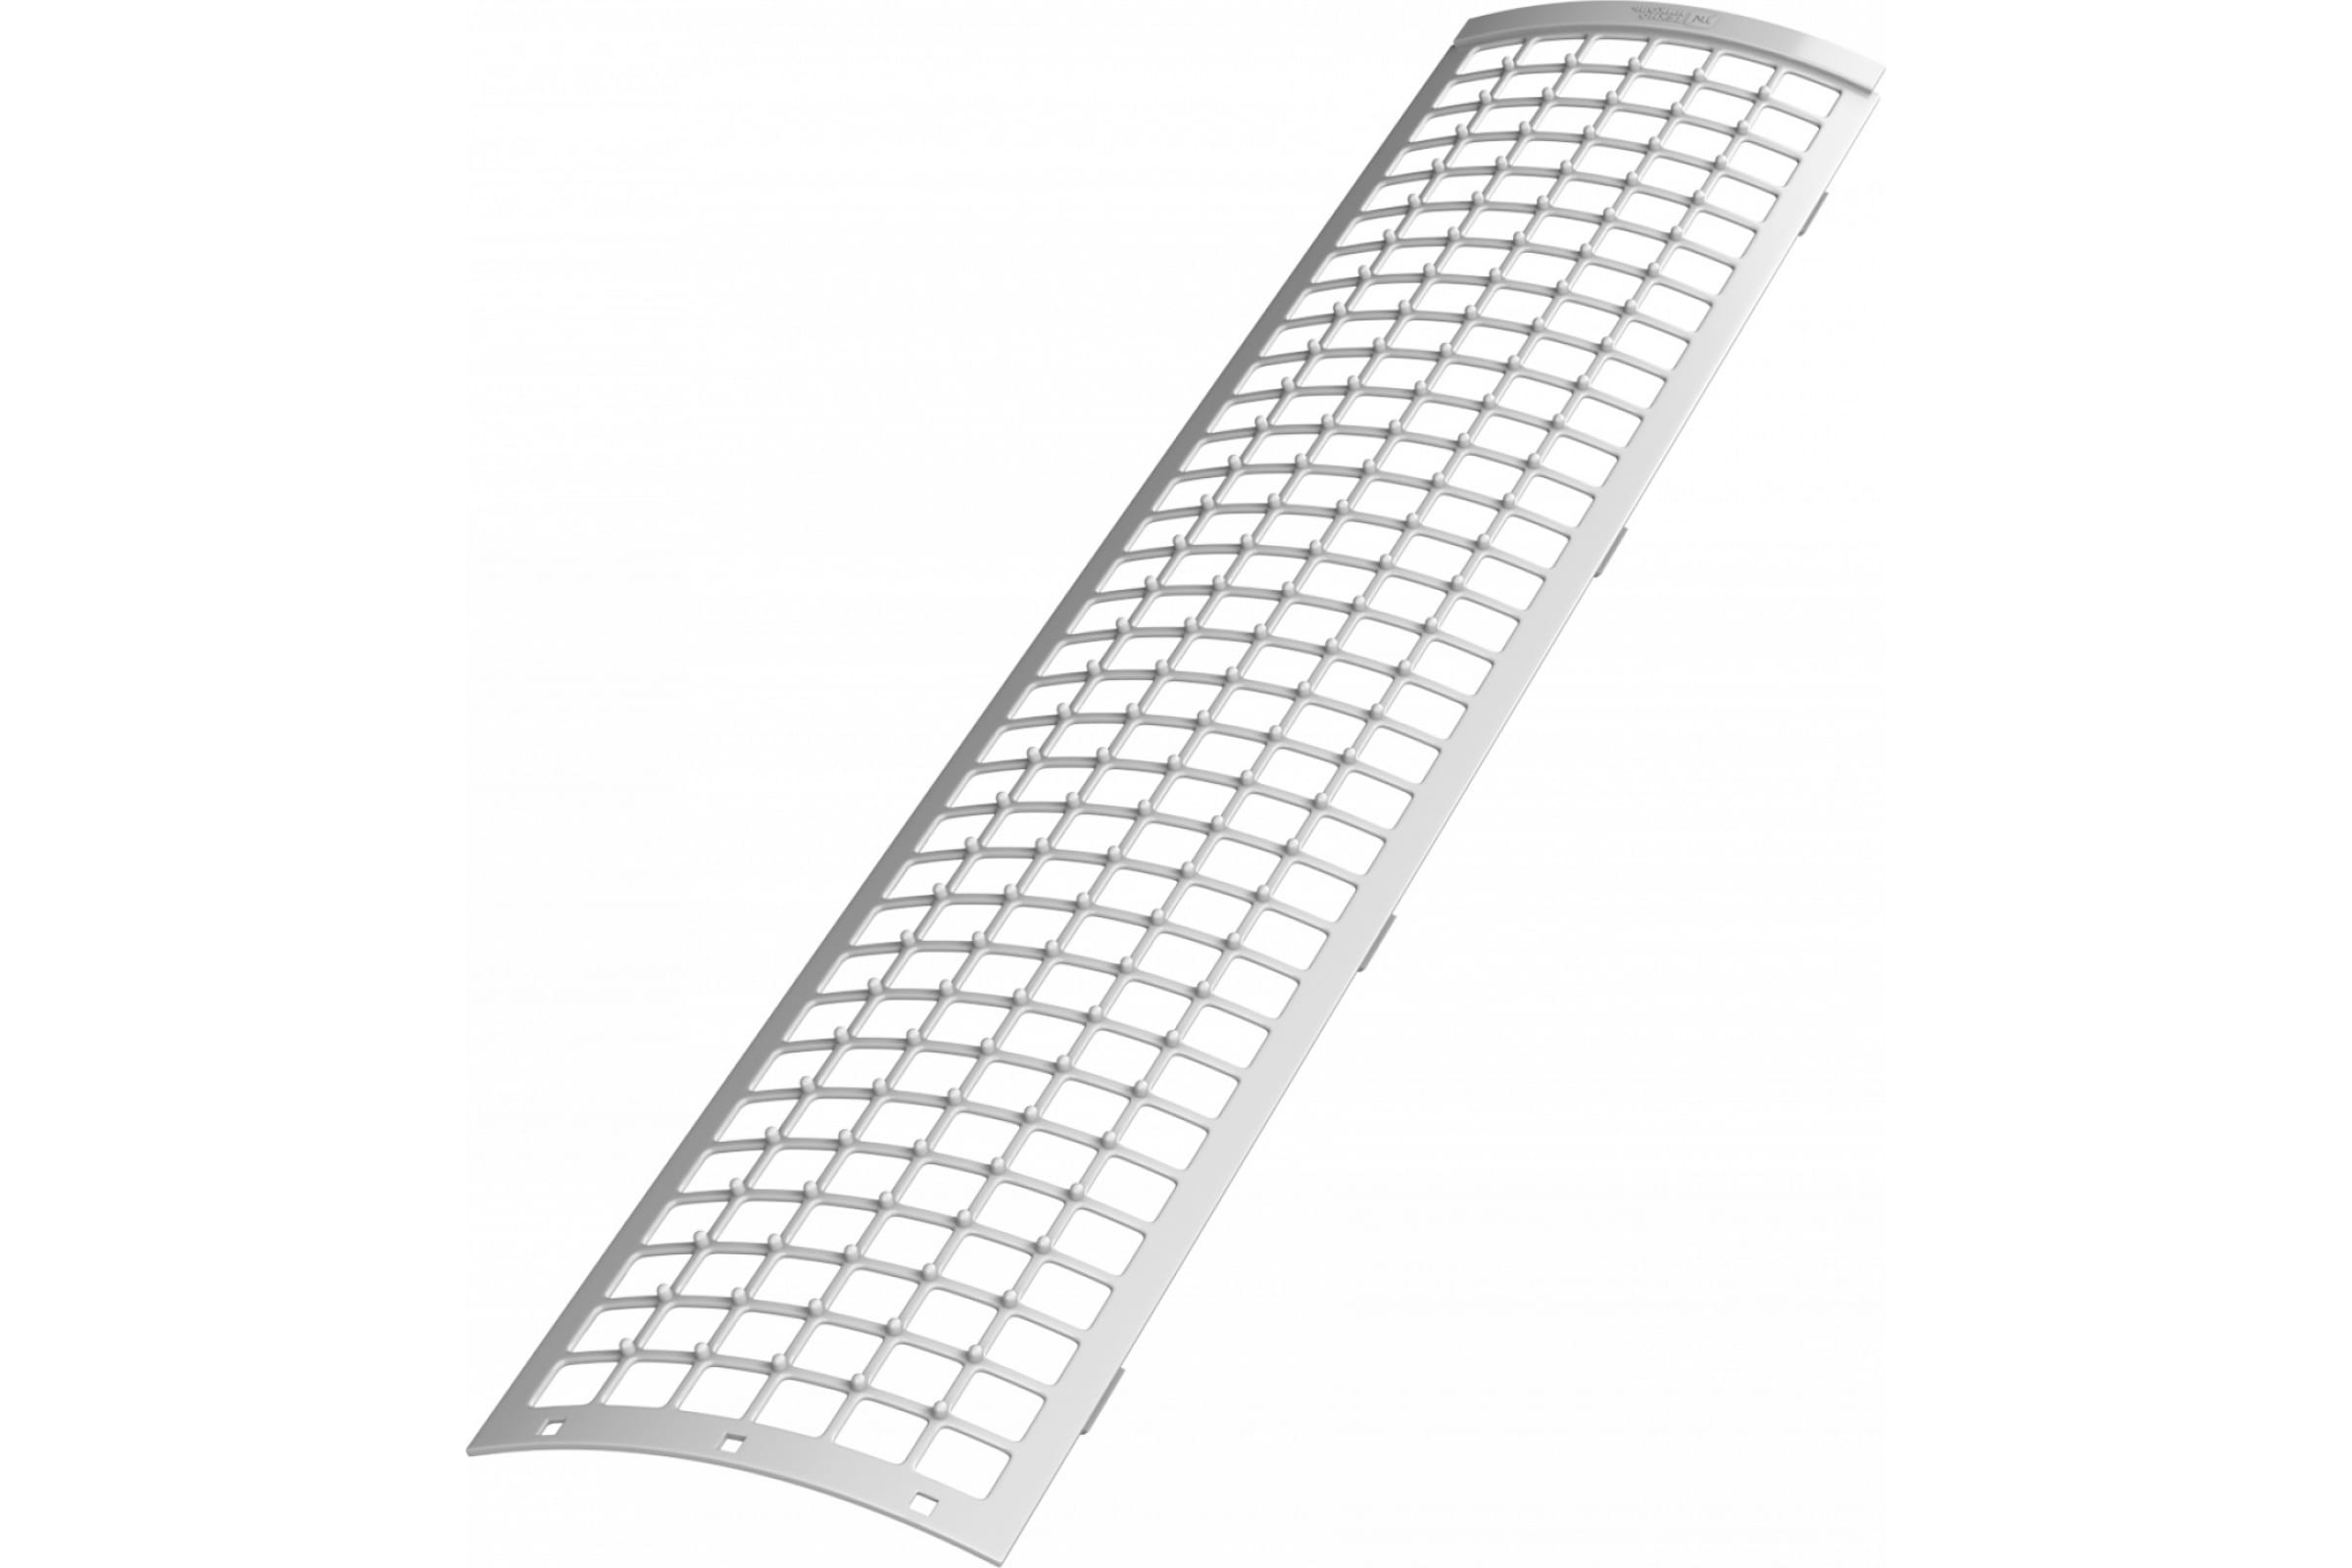 Технониколь ПВХ решетка желоба защиая (0,6 пог.м.), белый, шт. TN386161 защитная решетка желоба технониколь